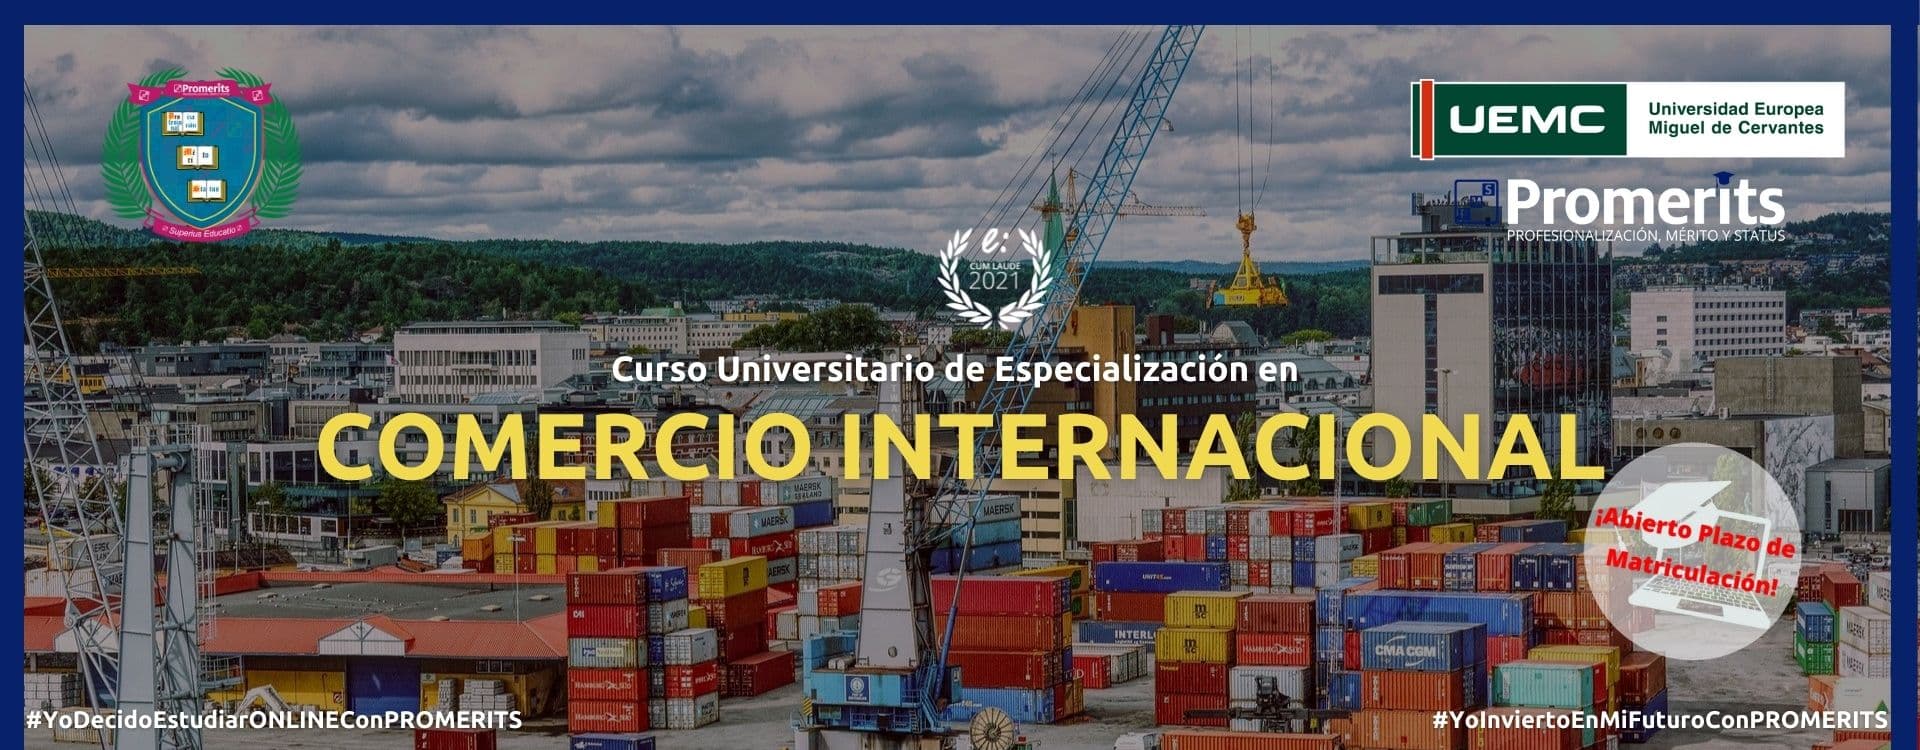 Curso Universitario de Especialización en Comercio Internacional